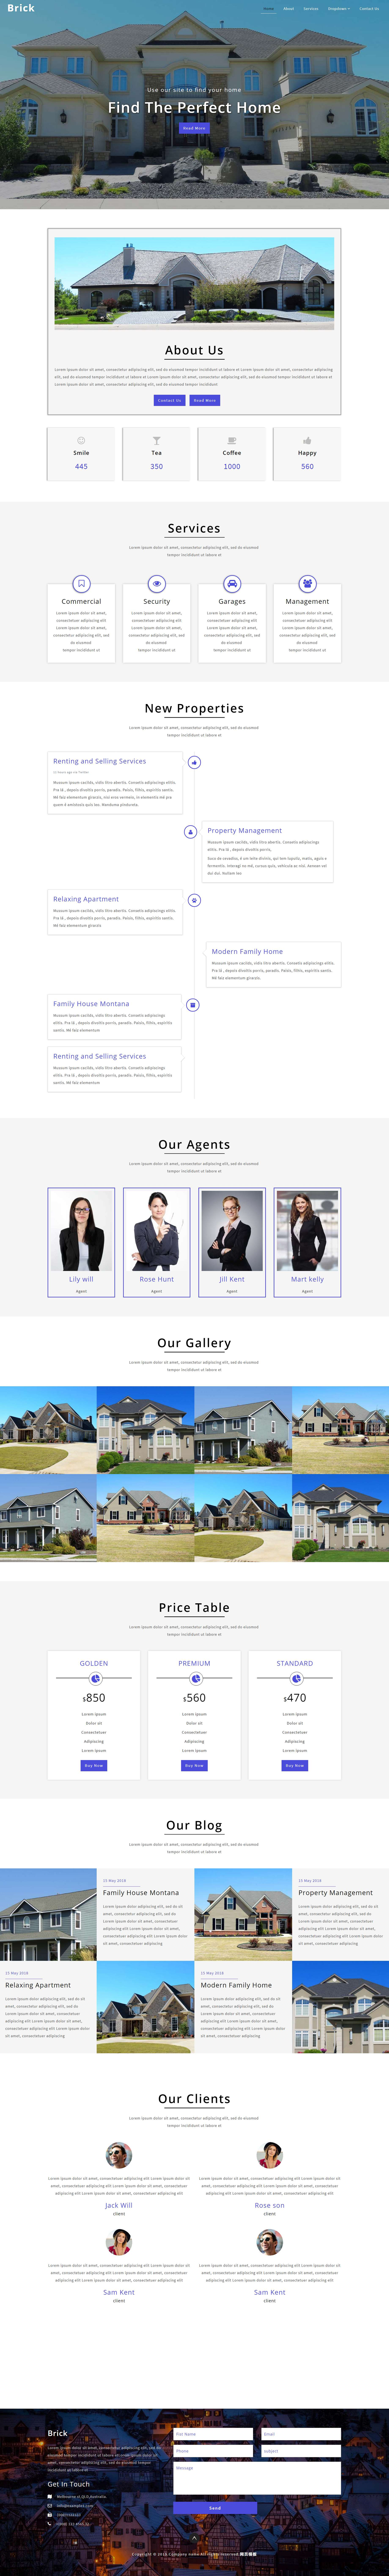 蓝色欧美风格响应式房屋中介公司网页模板